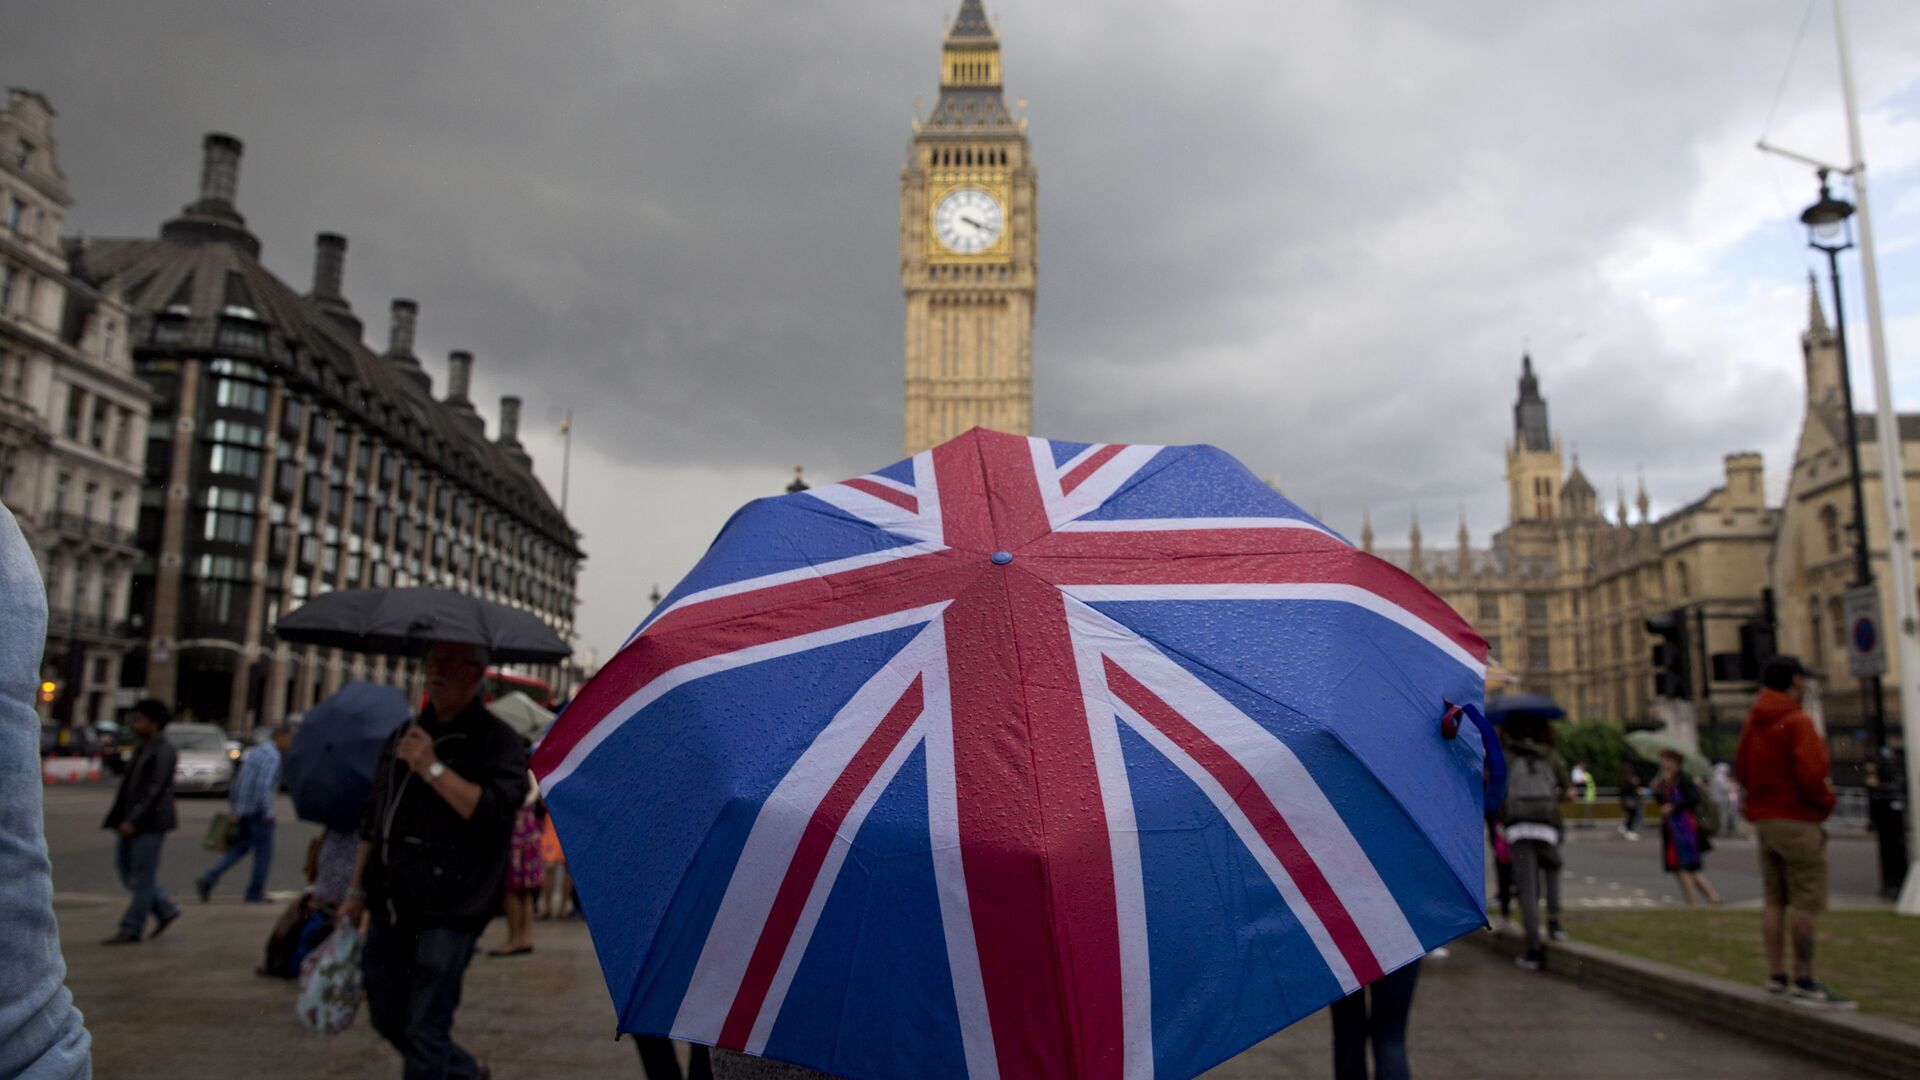 Пешеход с зонтом в цветах британского флага в Лондоне - Sputnik Латвия, 1920, 26.09.2021